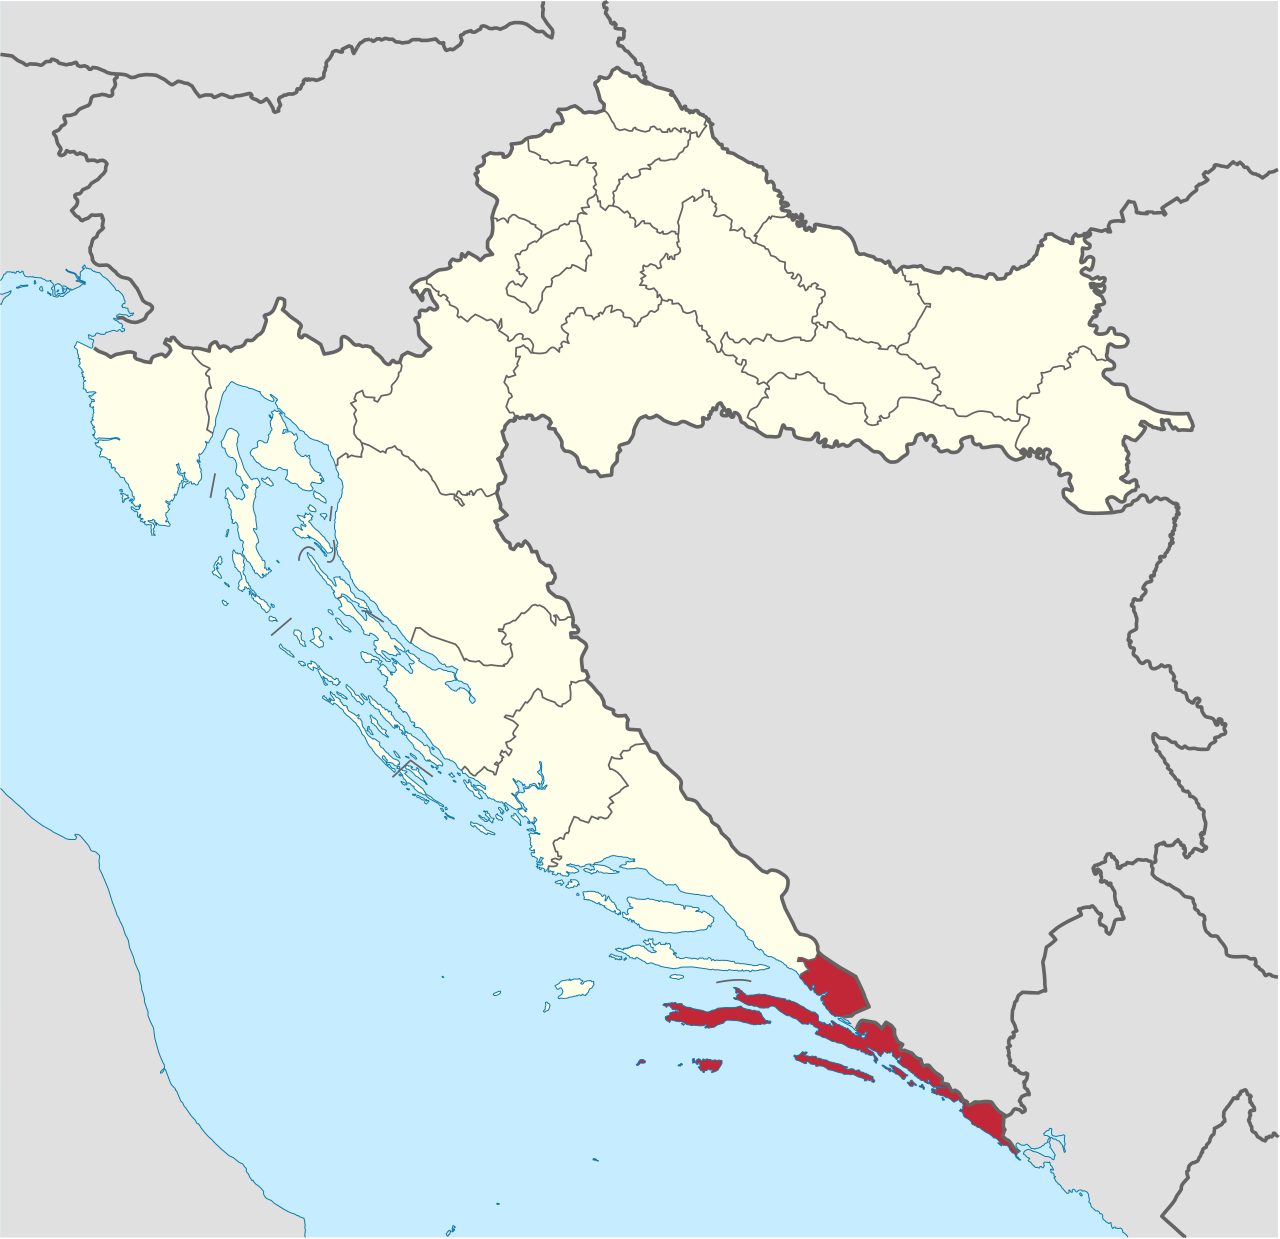 Hotel Kpr Urbex location or around the region Dubrovnik-Neretva (Općina Župa Dubrovačka), Croatia